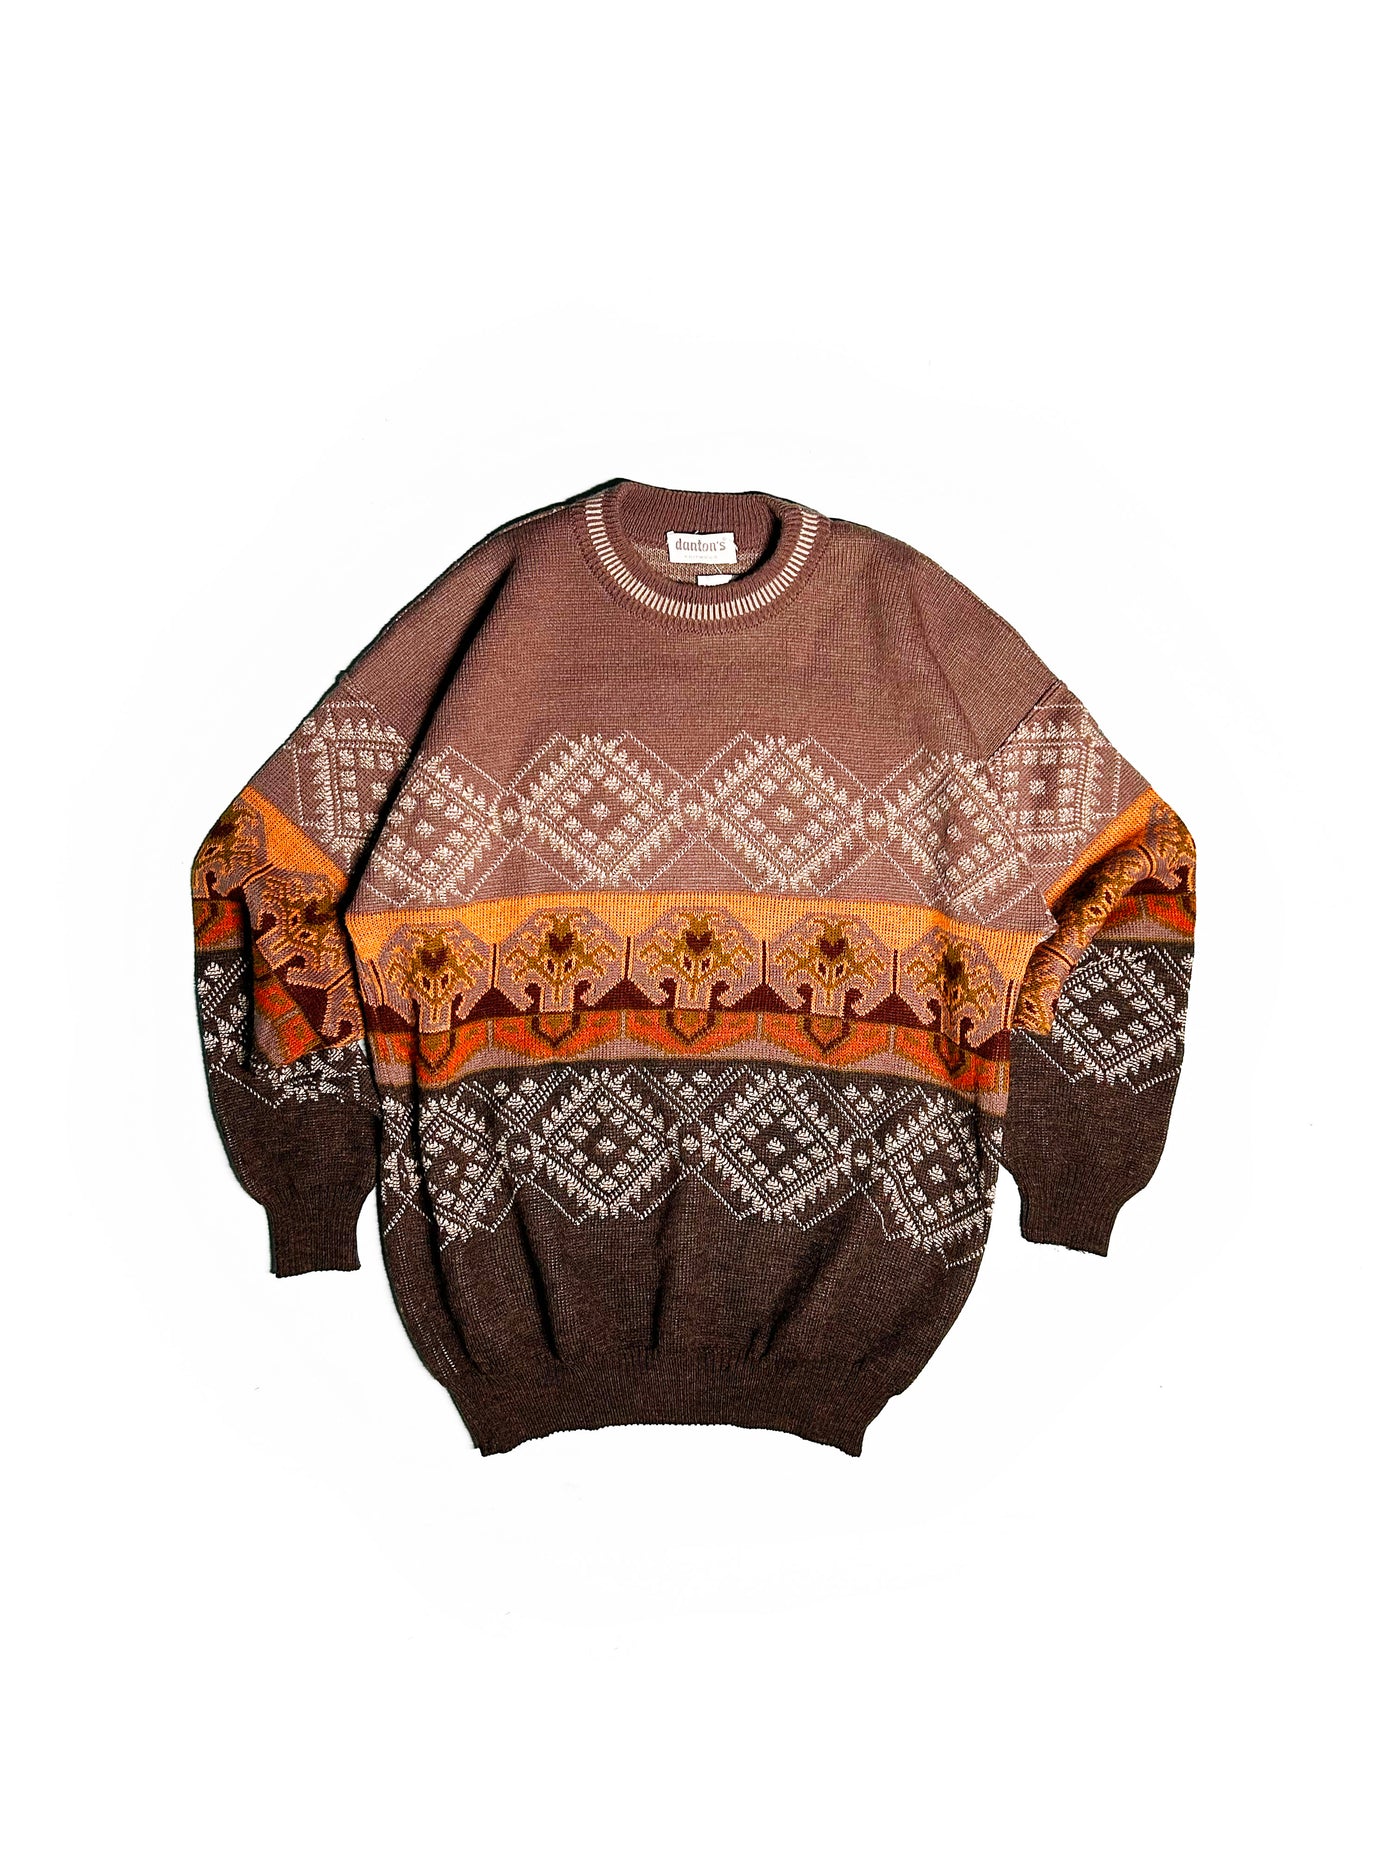 Vintage 80s Dantons Knitwear Patterned Sweater